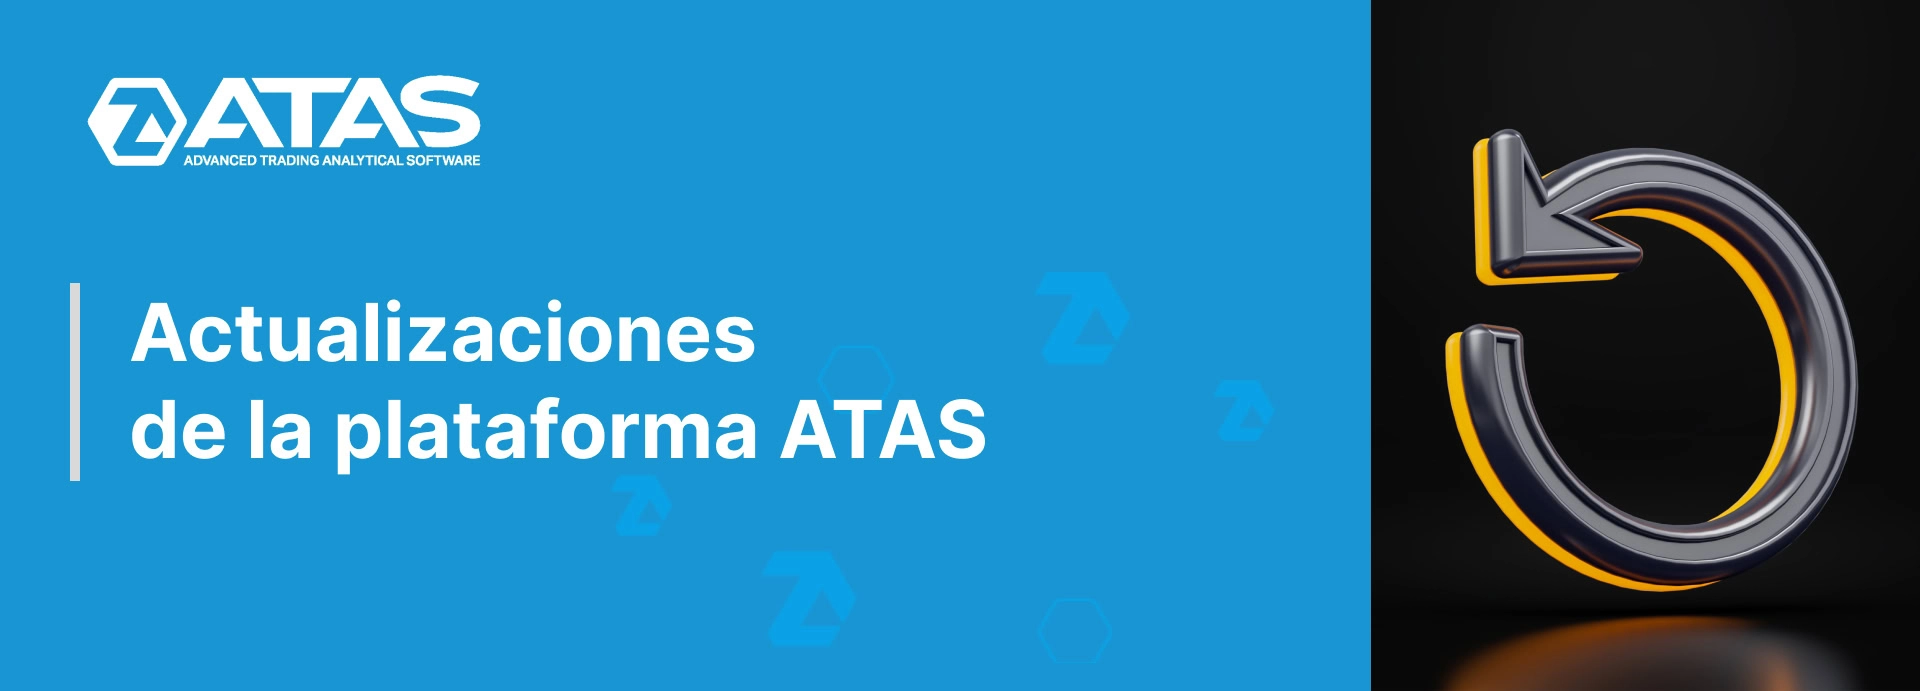 Actualizaciones de la plataforma ATAS